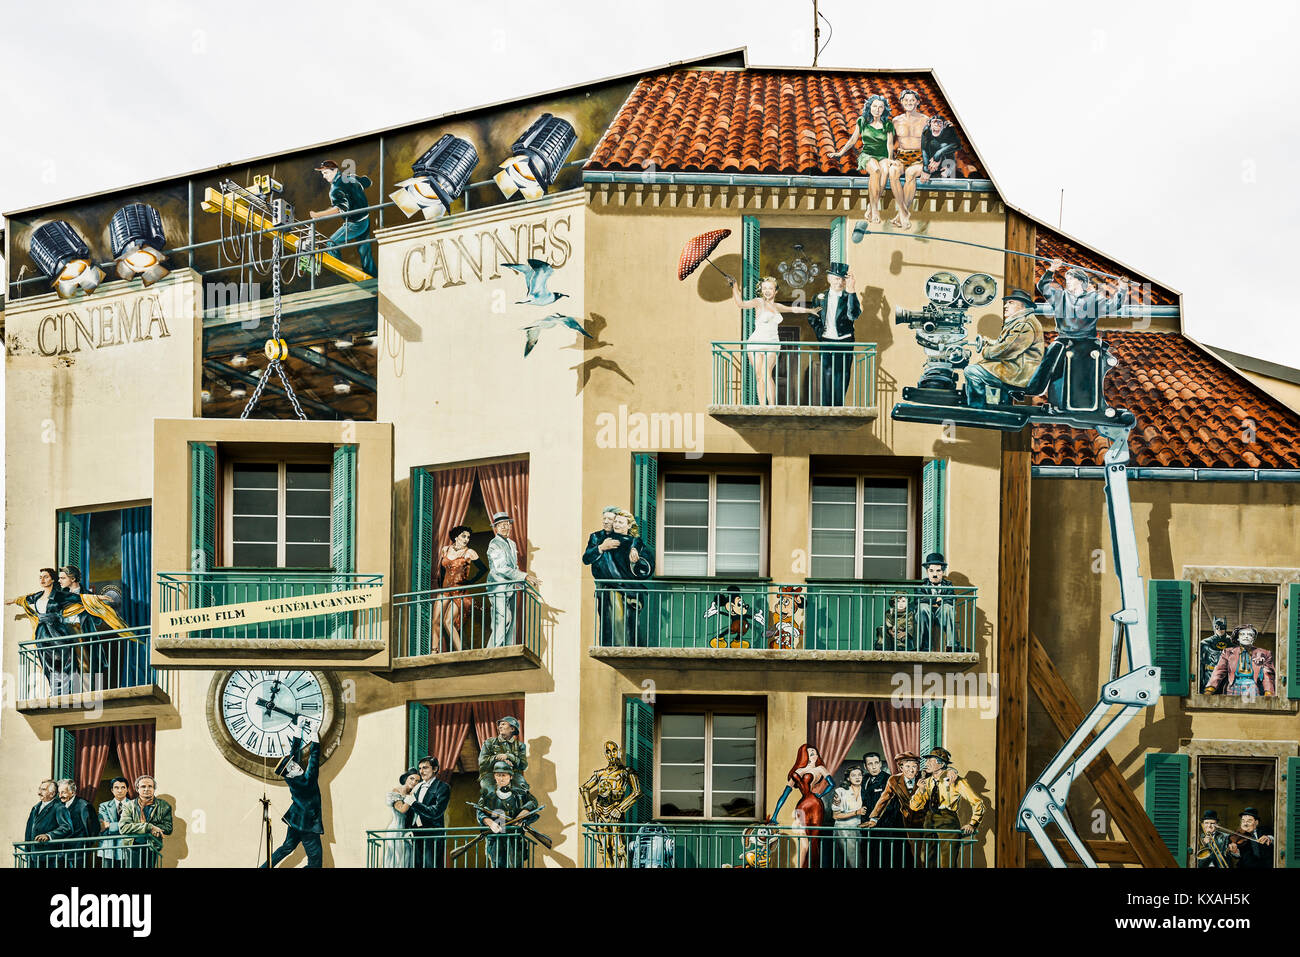 Bemalte Hausfassade mit Filmszenen, Cannes, Côte d'Azur, Provence - Alpes - Côte d'Azur, Südfrankreich, Frankreich Stockfoto